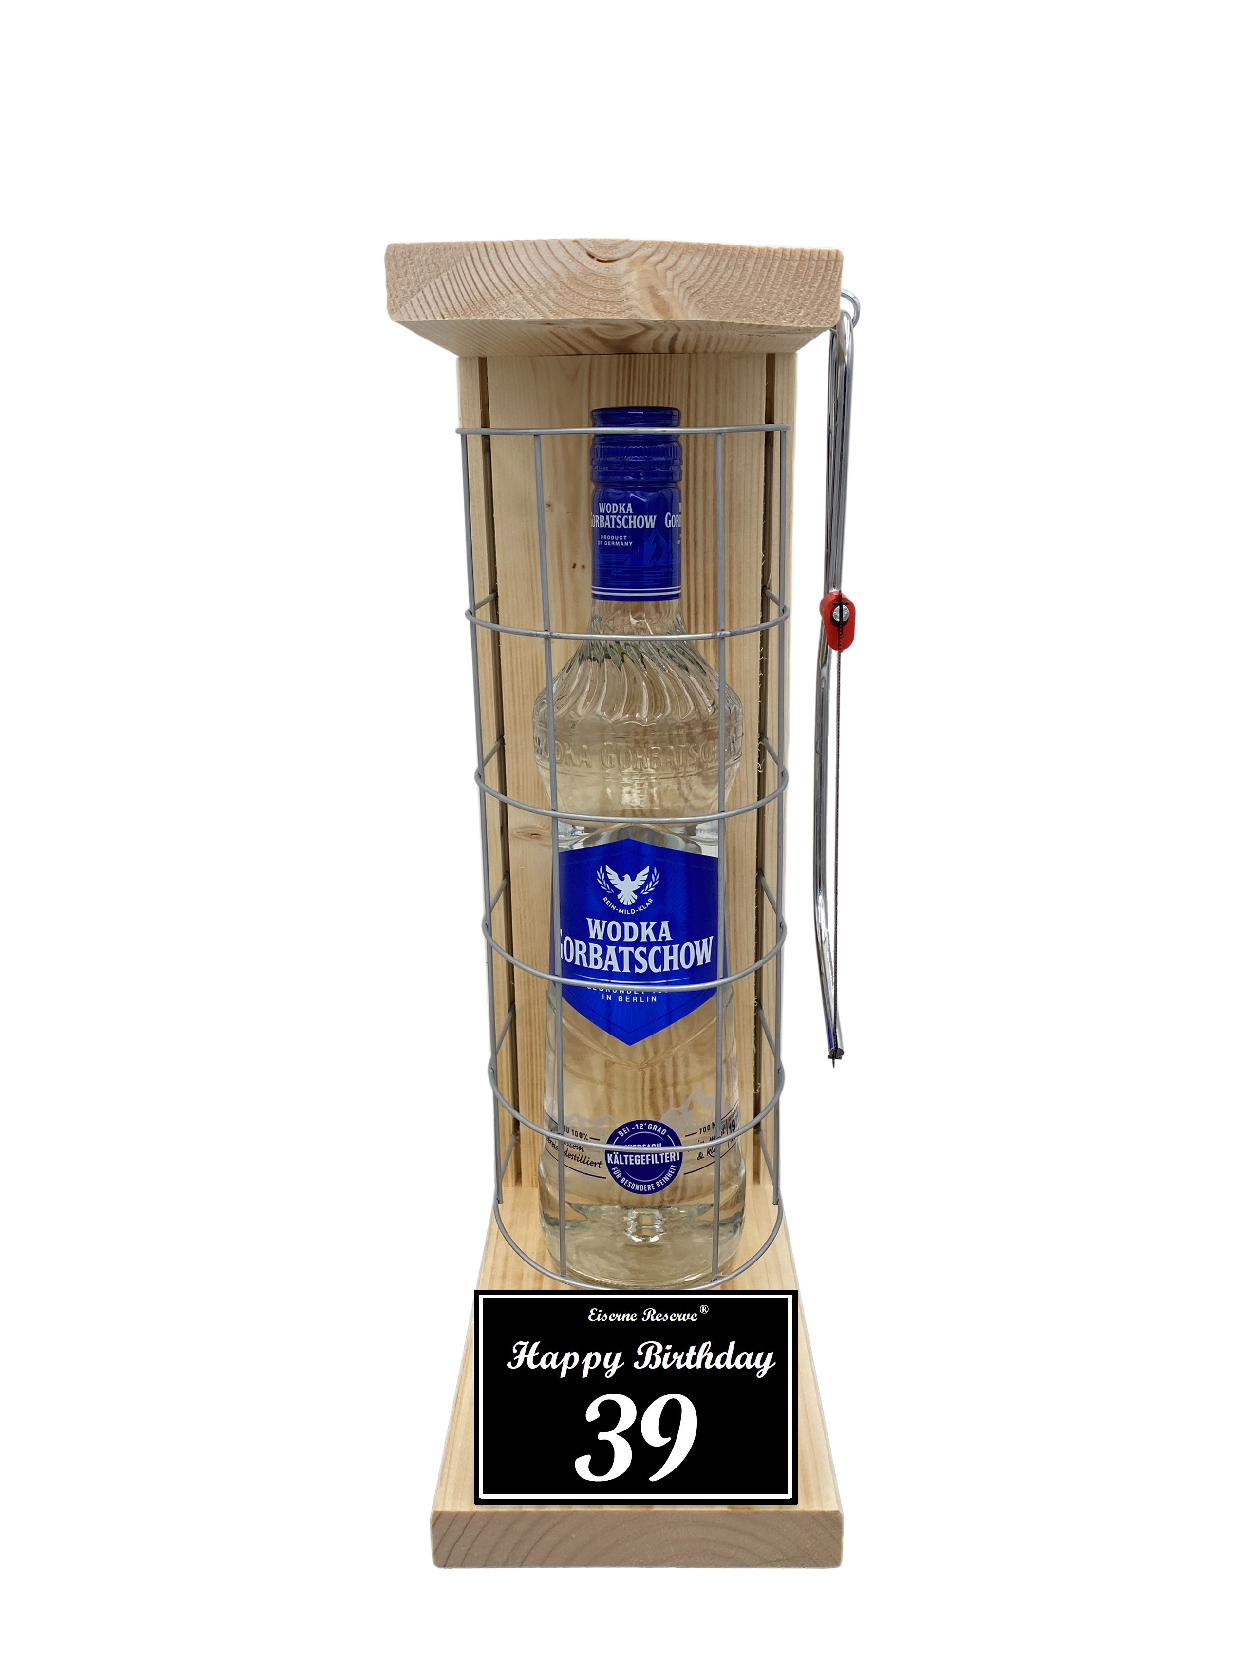 Wodka Geschenk zum 39 Geburtstag - Eiserne Reserve Gitterkäfig